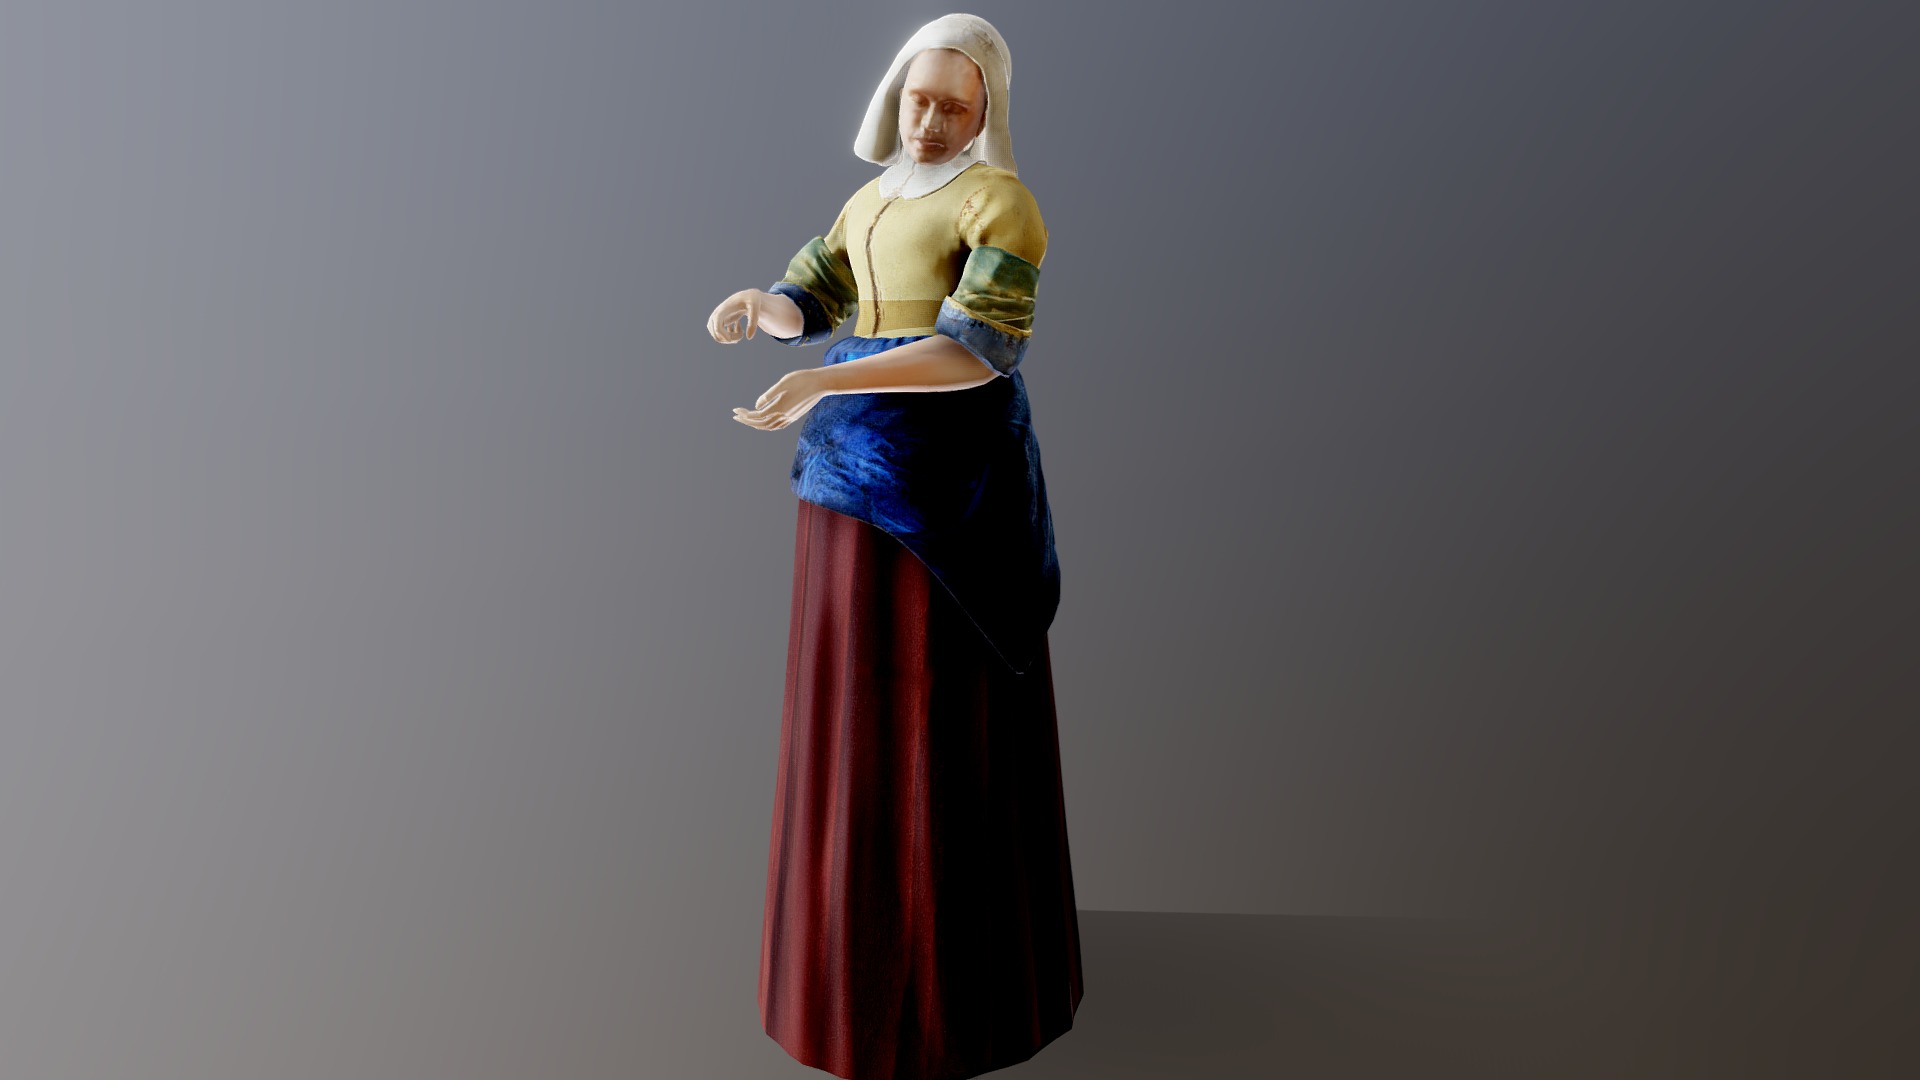 Johannes Vermeer - De keukenmeid - Milkmaid - 3D model by a.kentie 3d model